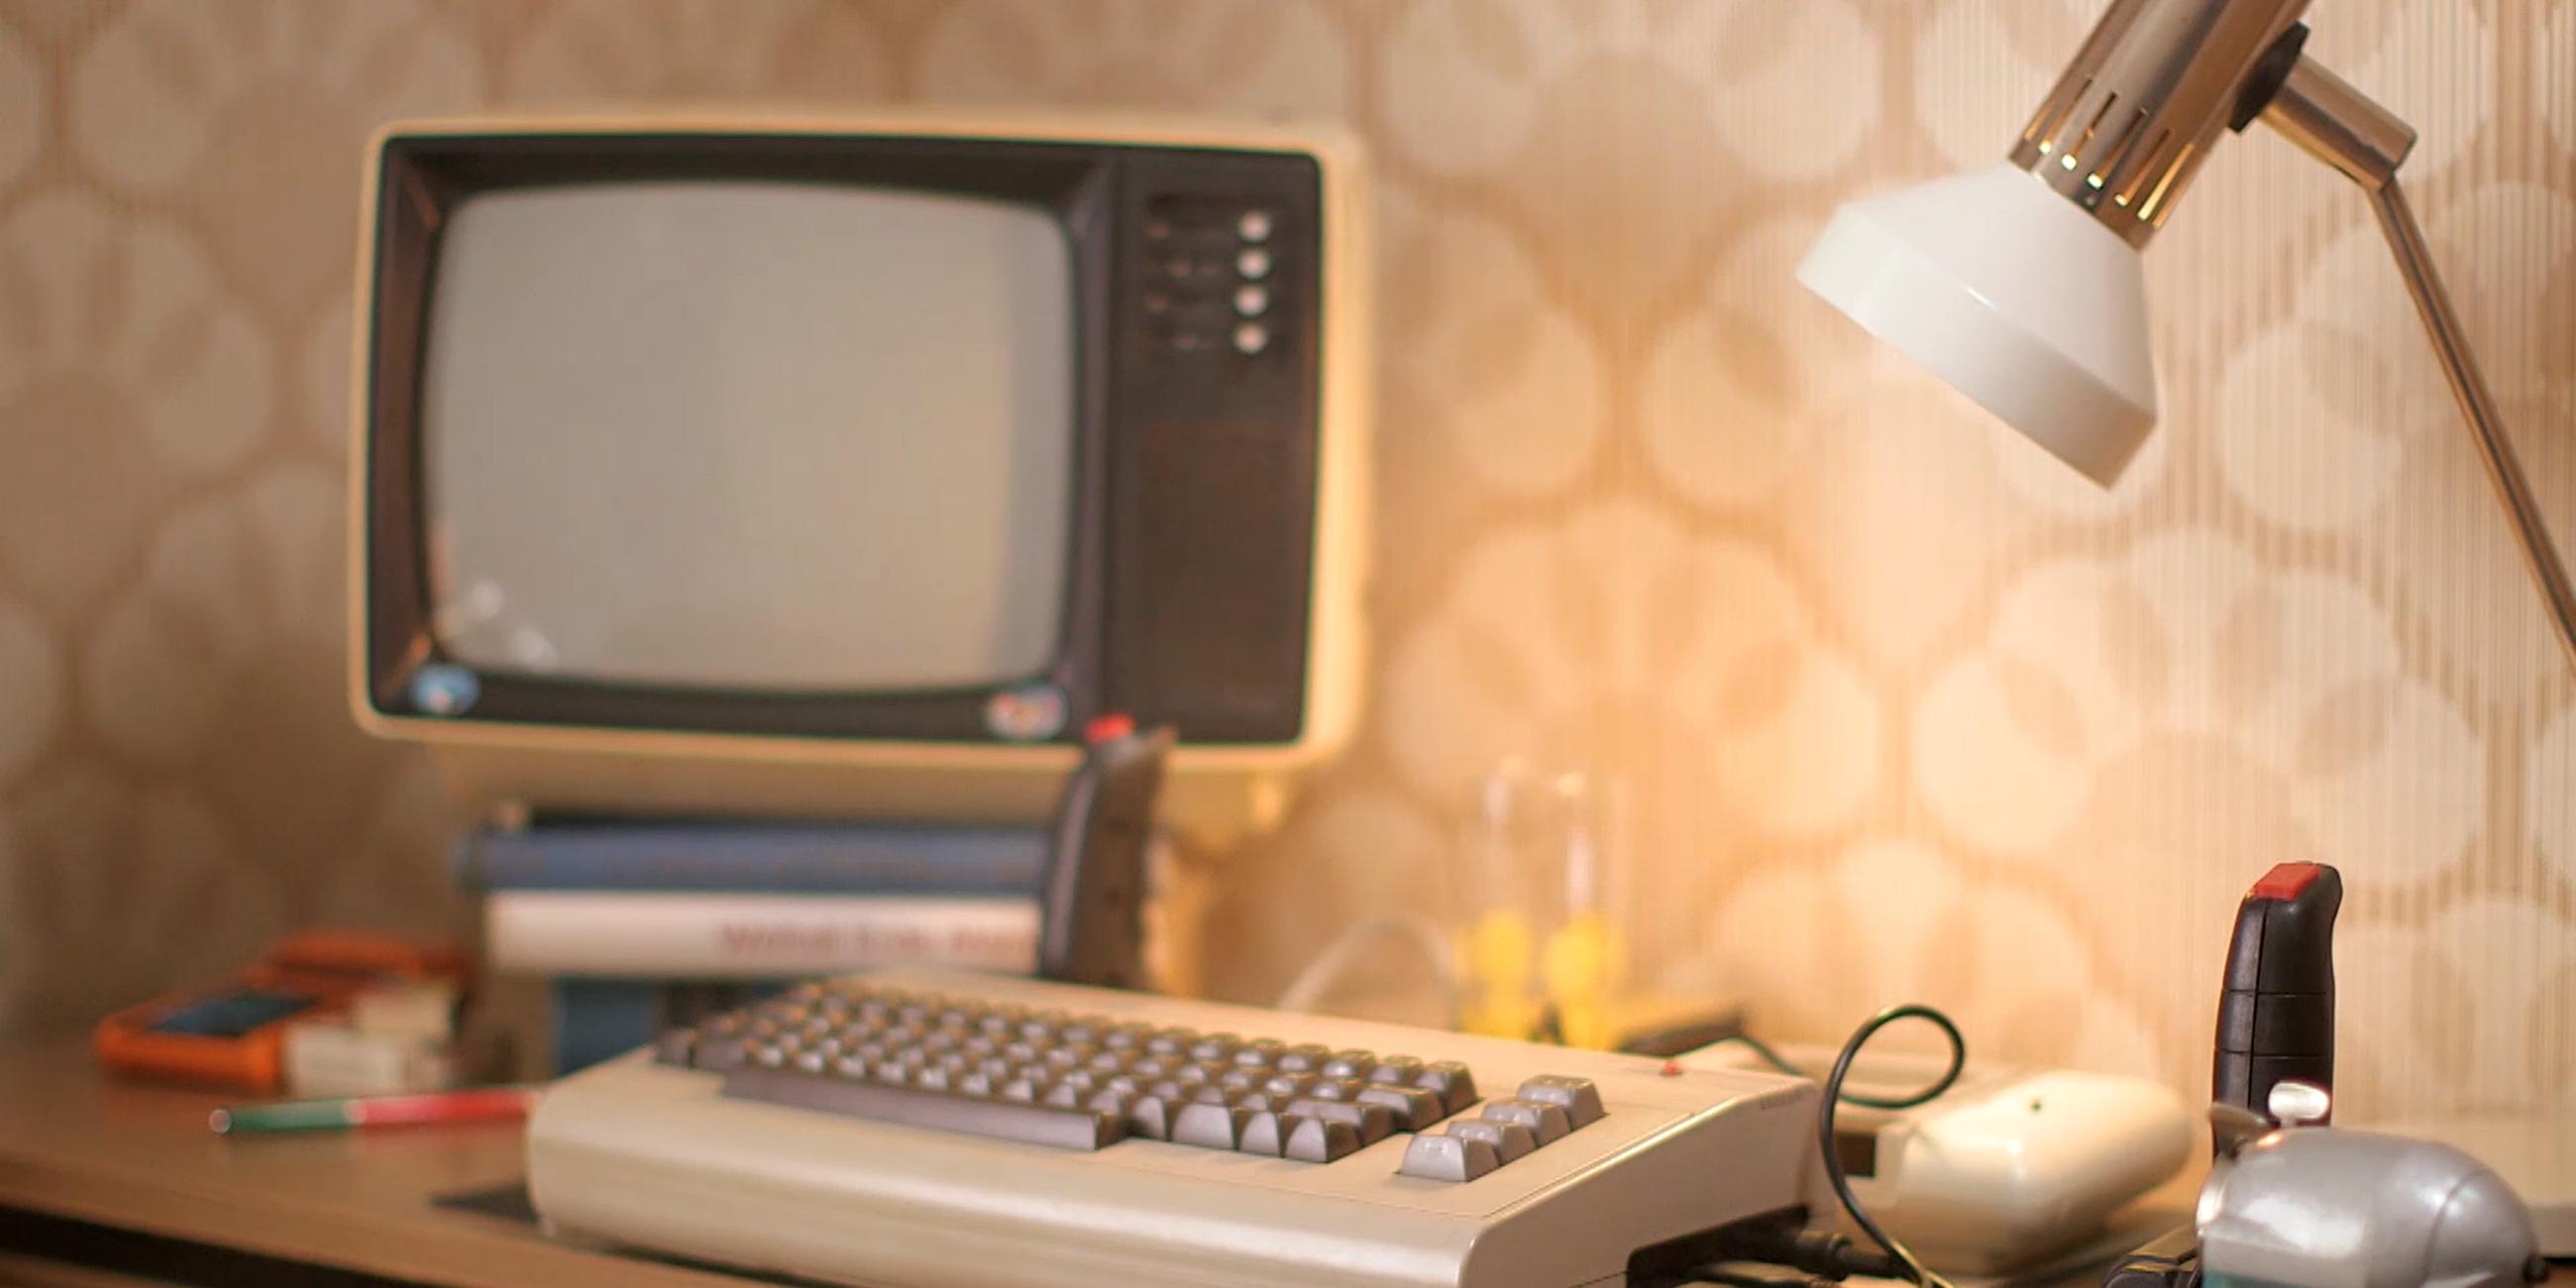 In Westdeutschland war der C64 ein millionenfacher Verkaufshit, in der DDR dagegen kamen nur Wenige mit harten Devisen an den Rechner, der so viel kostete wie ein Trabi.